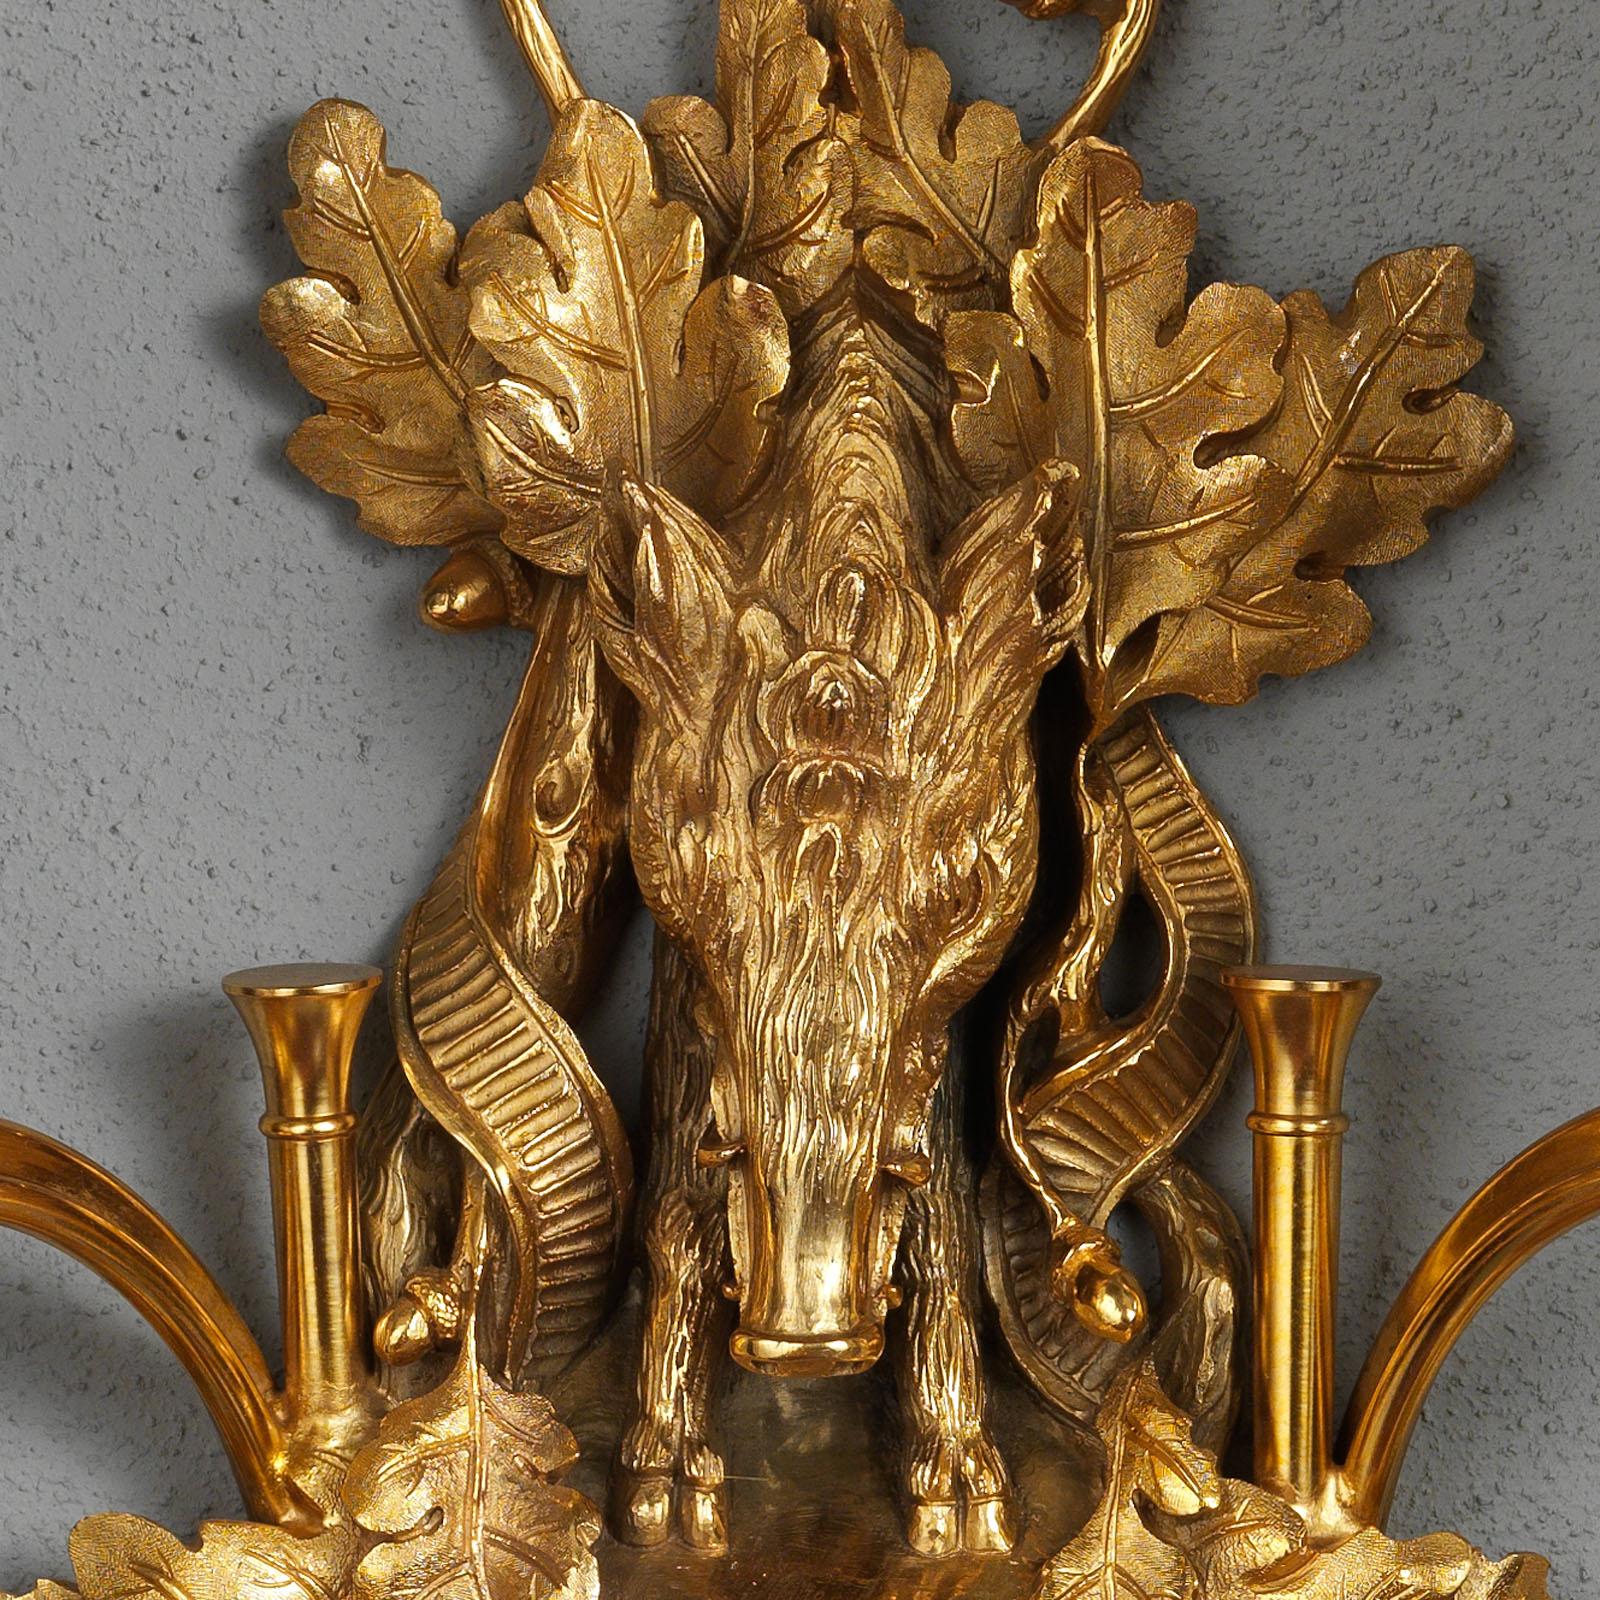 Dans cette applique en bronze doré de style Napoléon III par Gherardo Degli Albizzi, vous pouvez apprécier à la fois des motifs de chasse et des motifs végétaux sous la forme d'un sanglier et de feuilles de chêne qui créent une plaque arrière dorée